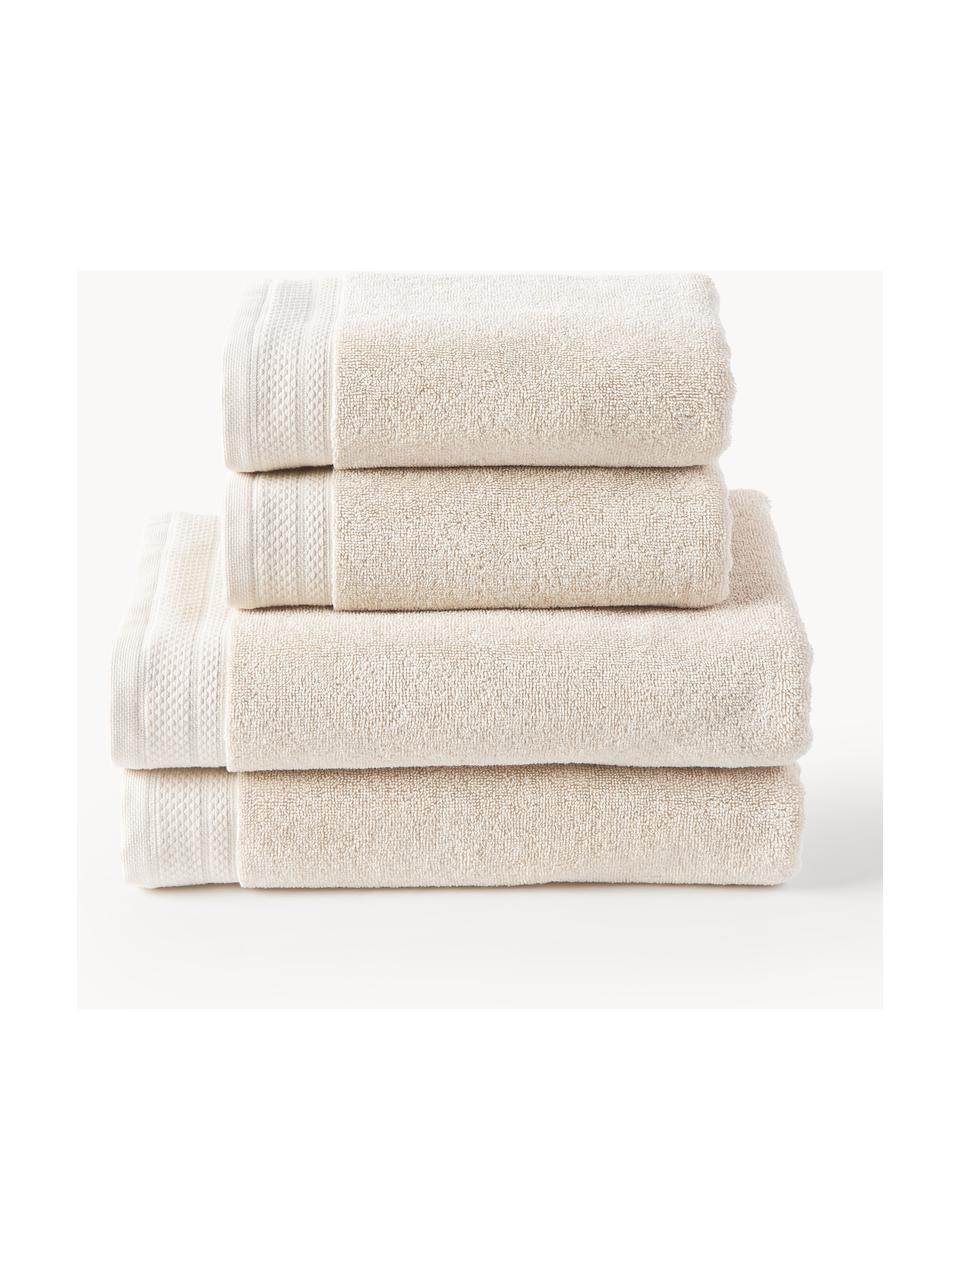 Komplet ręczników z bawełny organicznej Premium, różne rozmiary, Jasny beżowy, 3 elem. (ręcznik dla gości, ręcznik do rąk, ręcznik kąpielowy)